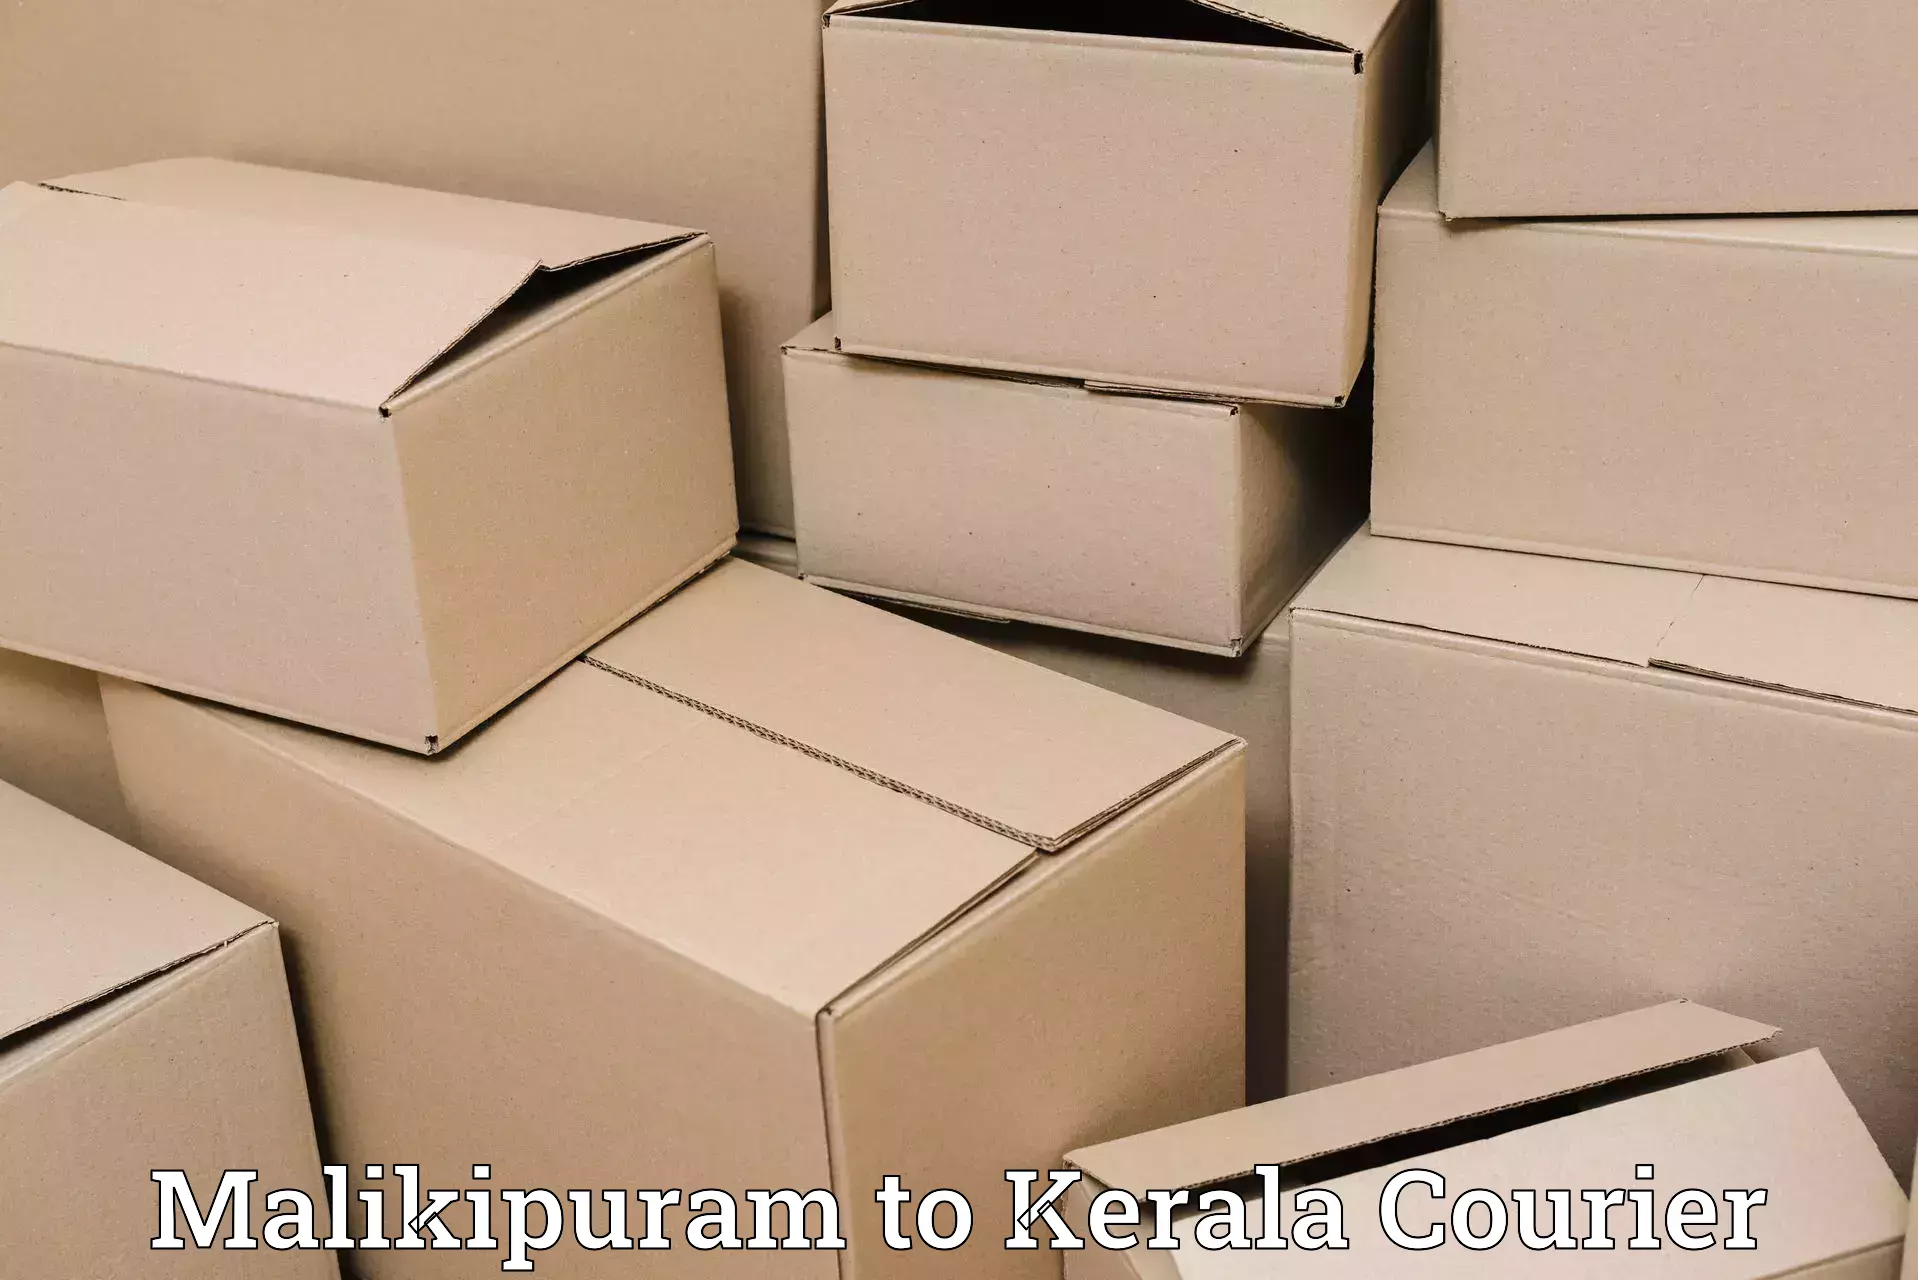 Seamless shipping experience in Malikipuram to Kazhakkoottam